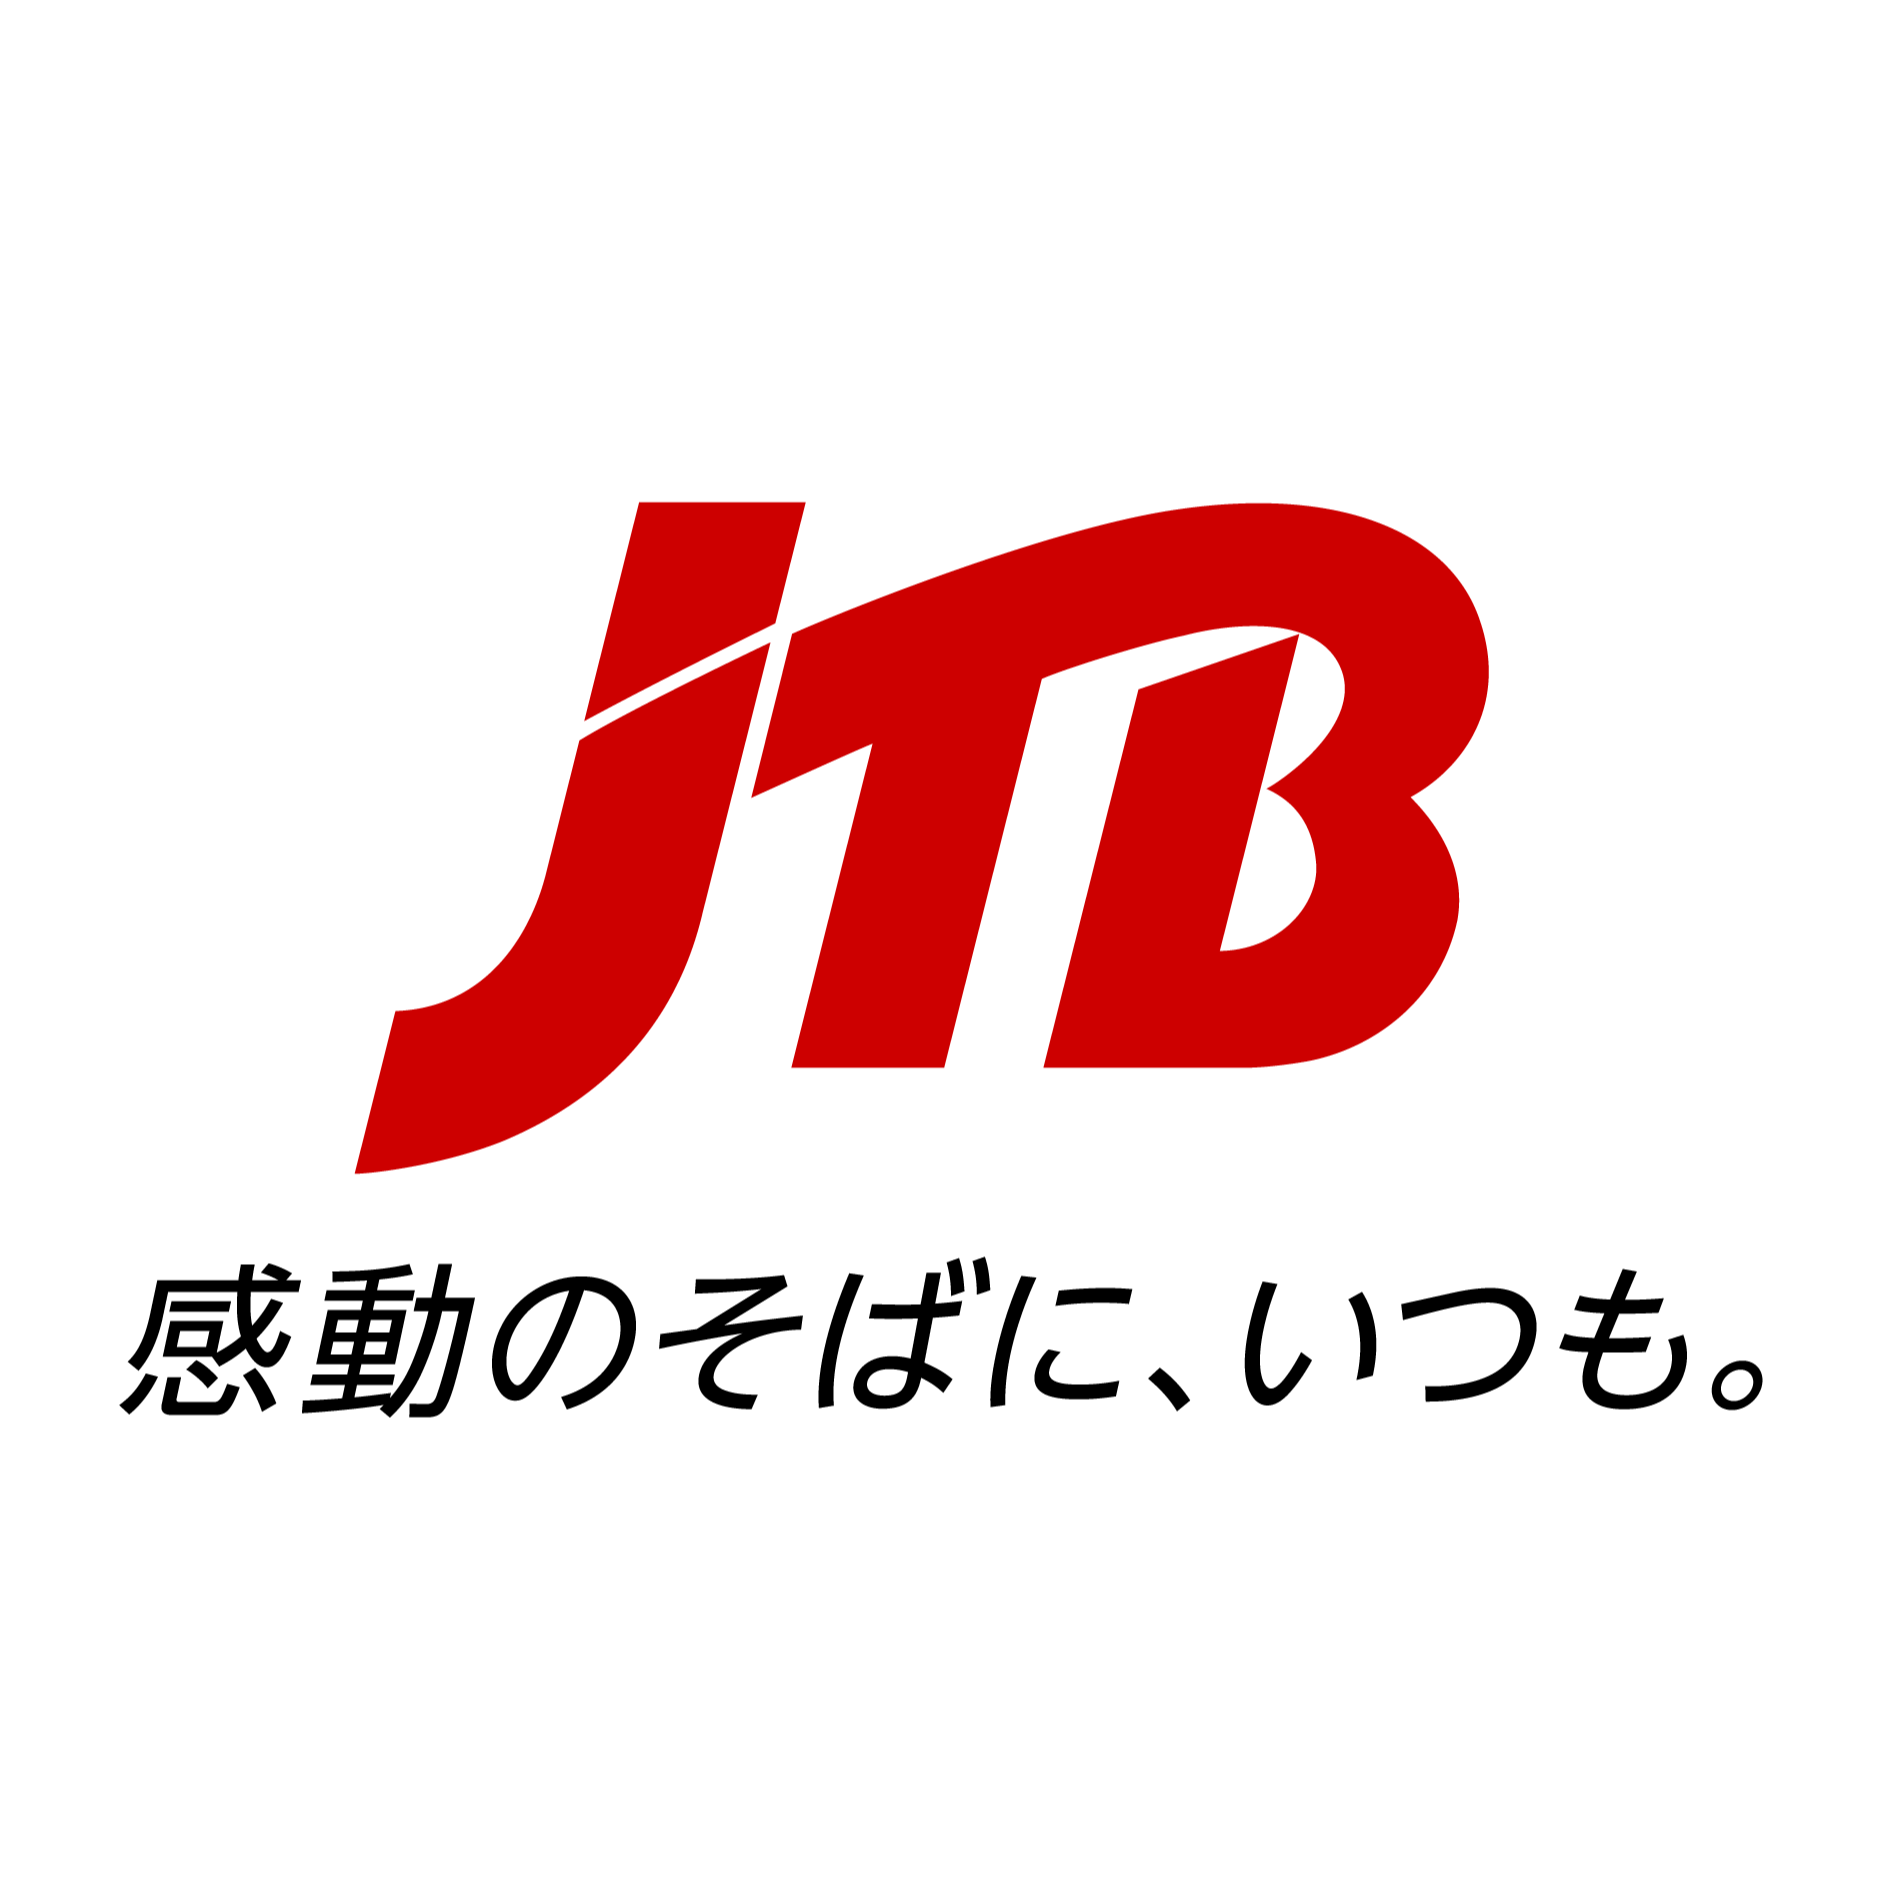 JTB 鳥取支店 Logo